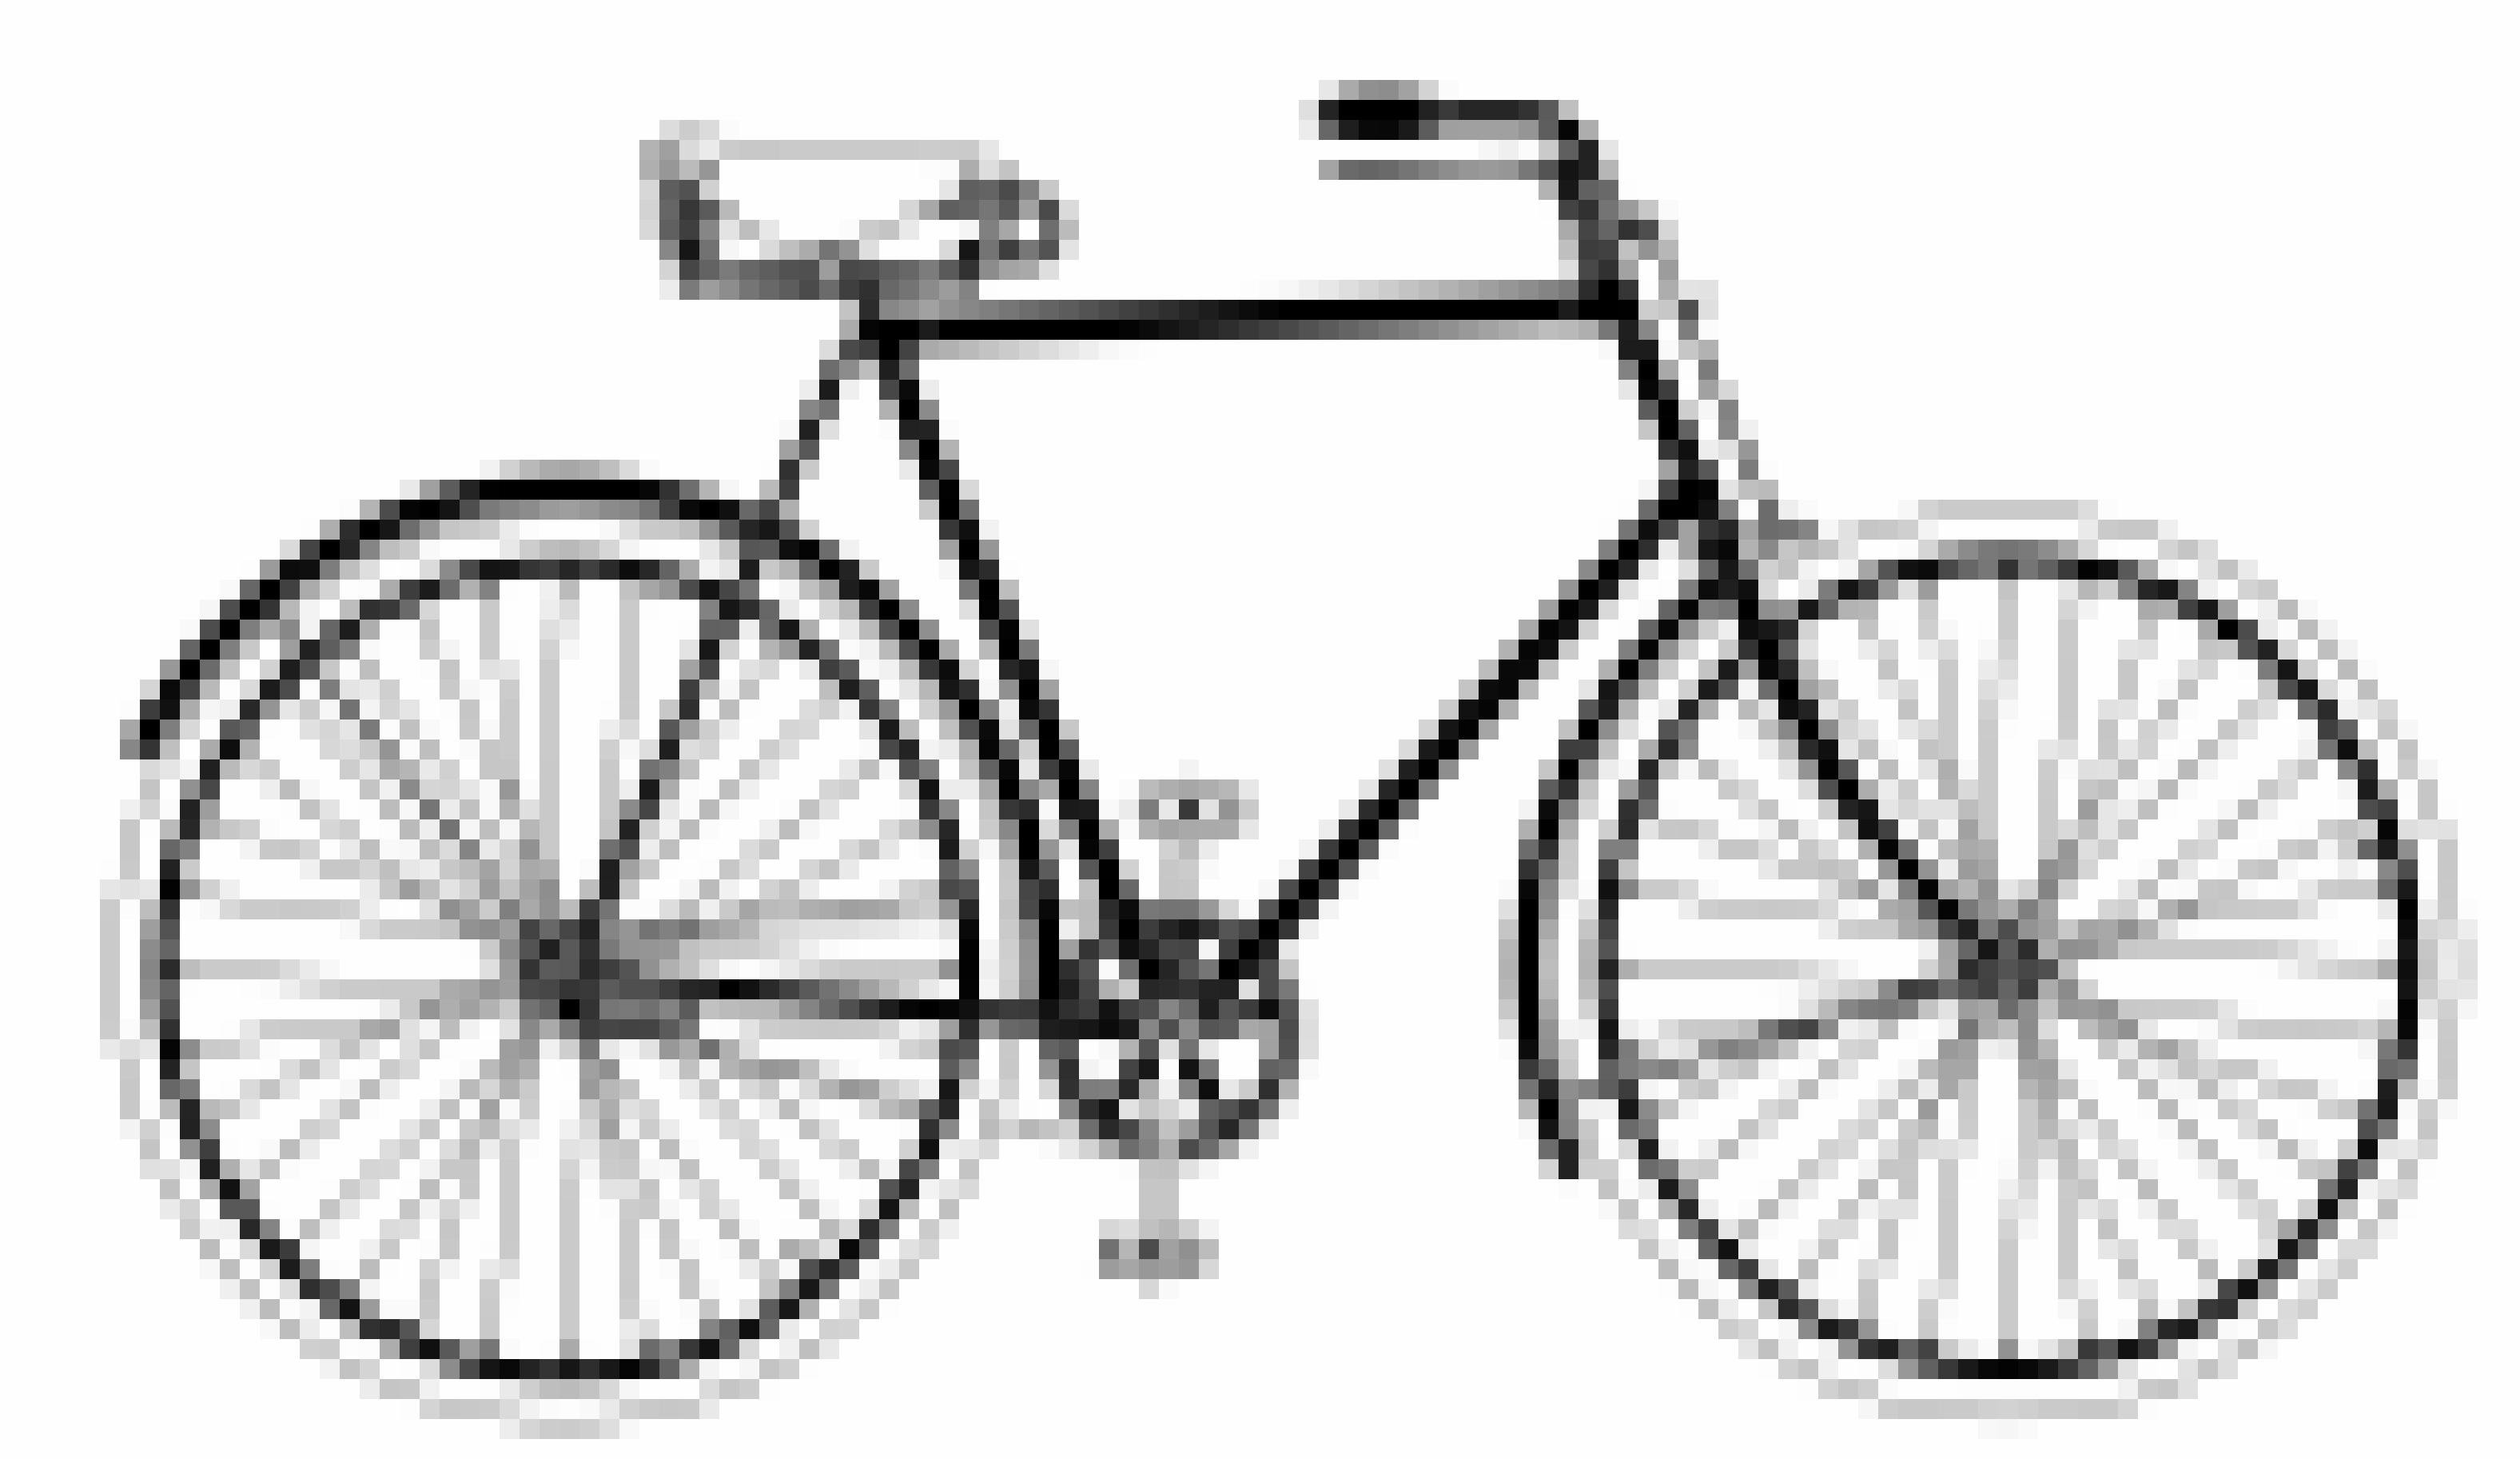 Schwarzweiß-Schema eines altertümlichen Fahrrads, das aber bereits die Geometrie heutiger Herrenräder aufweist